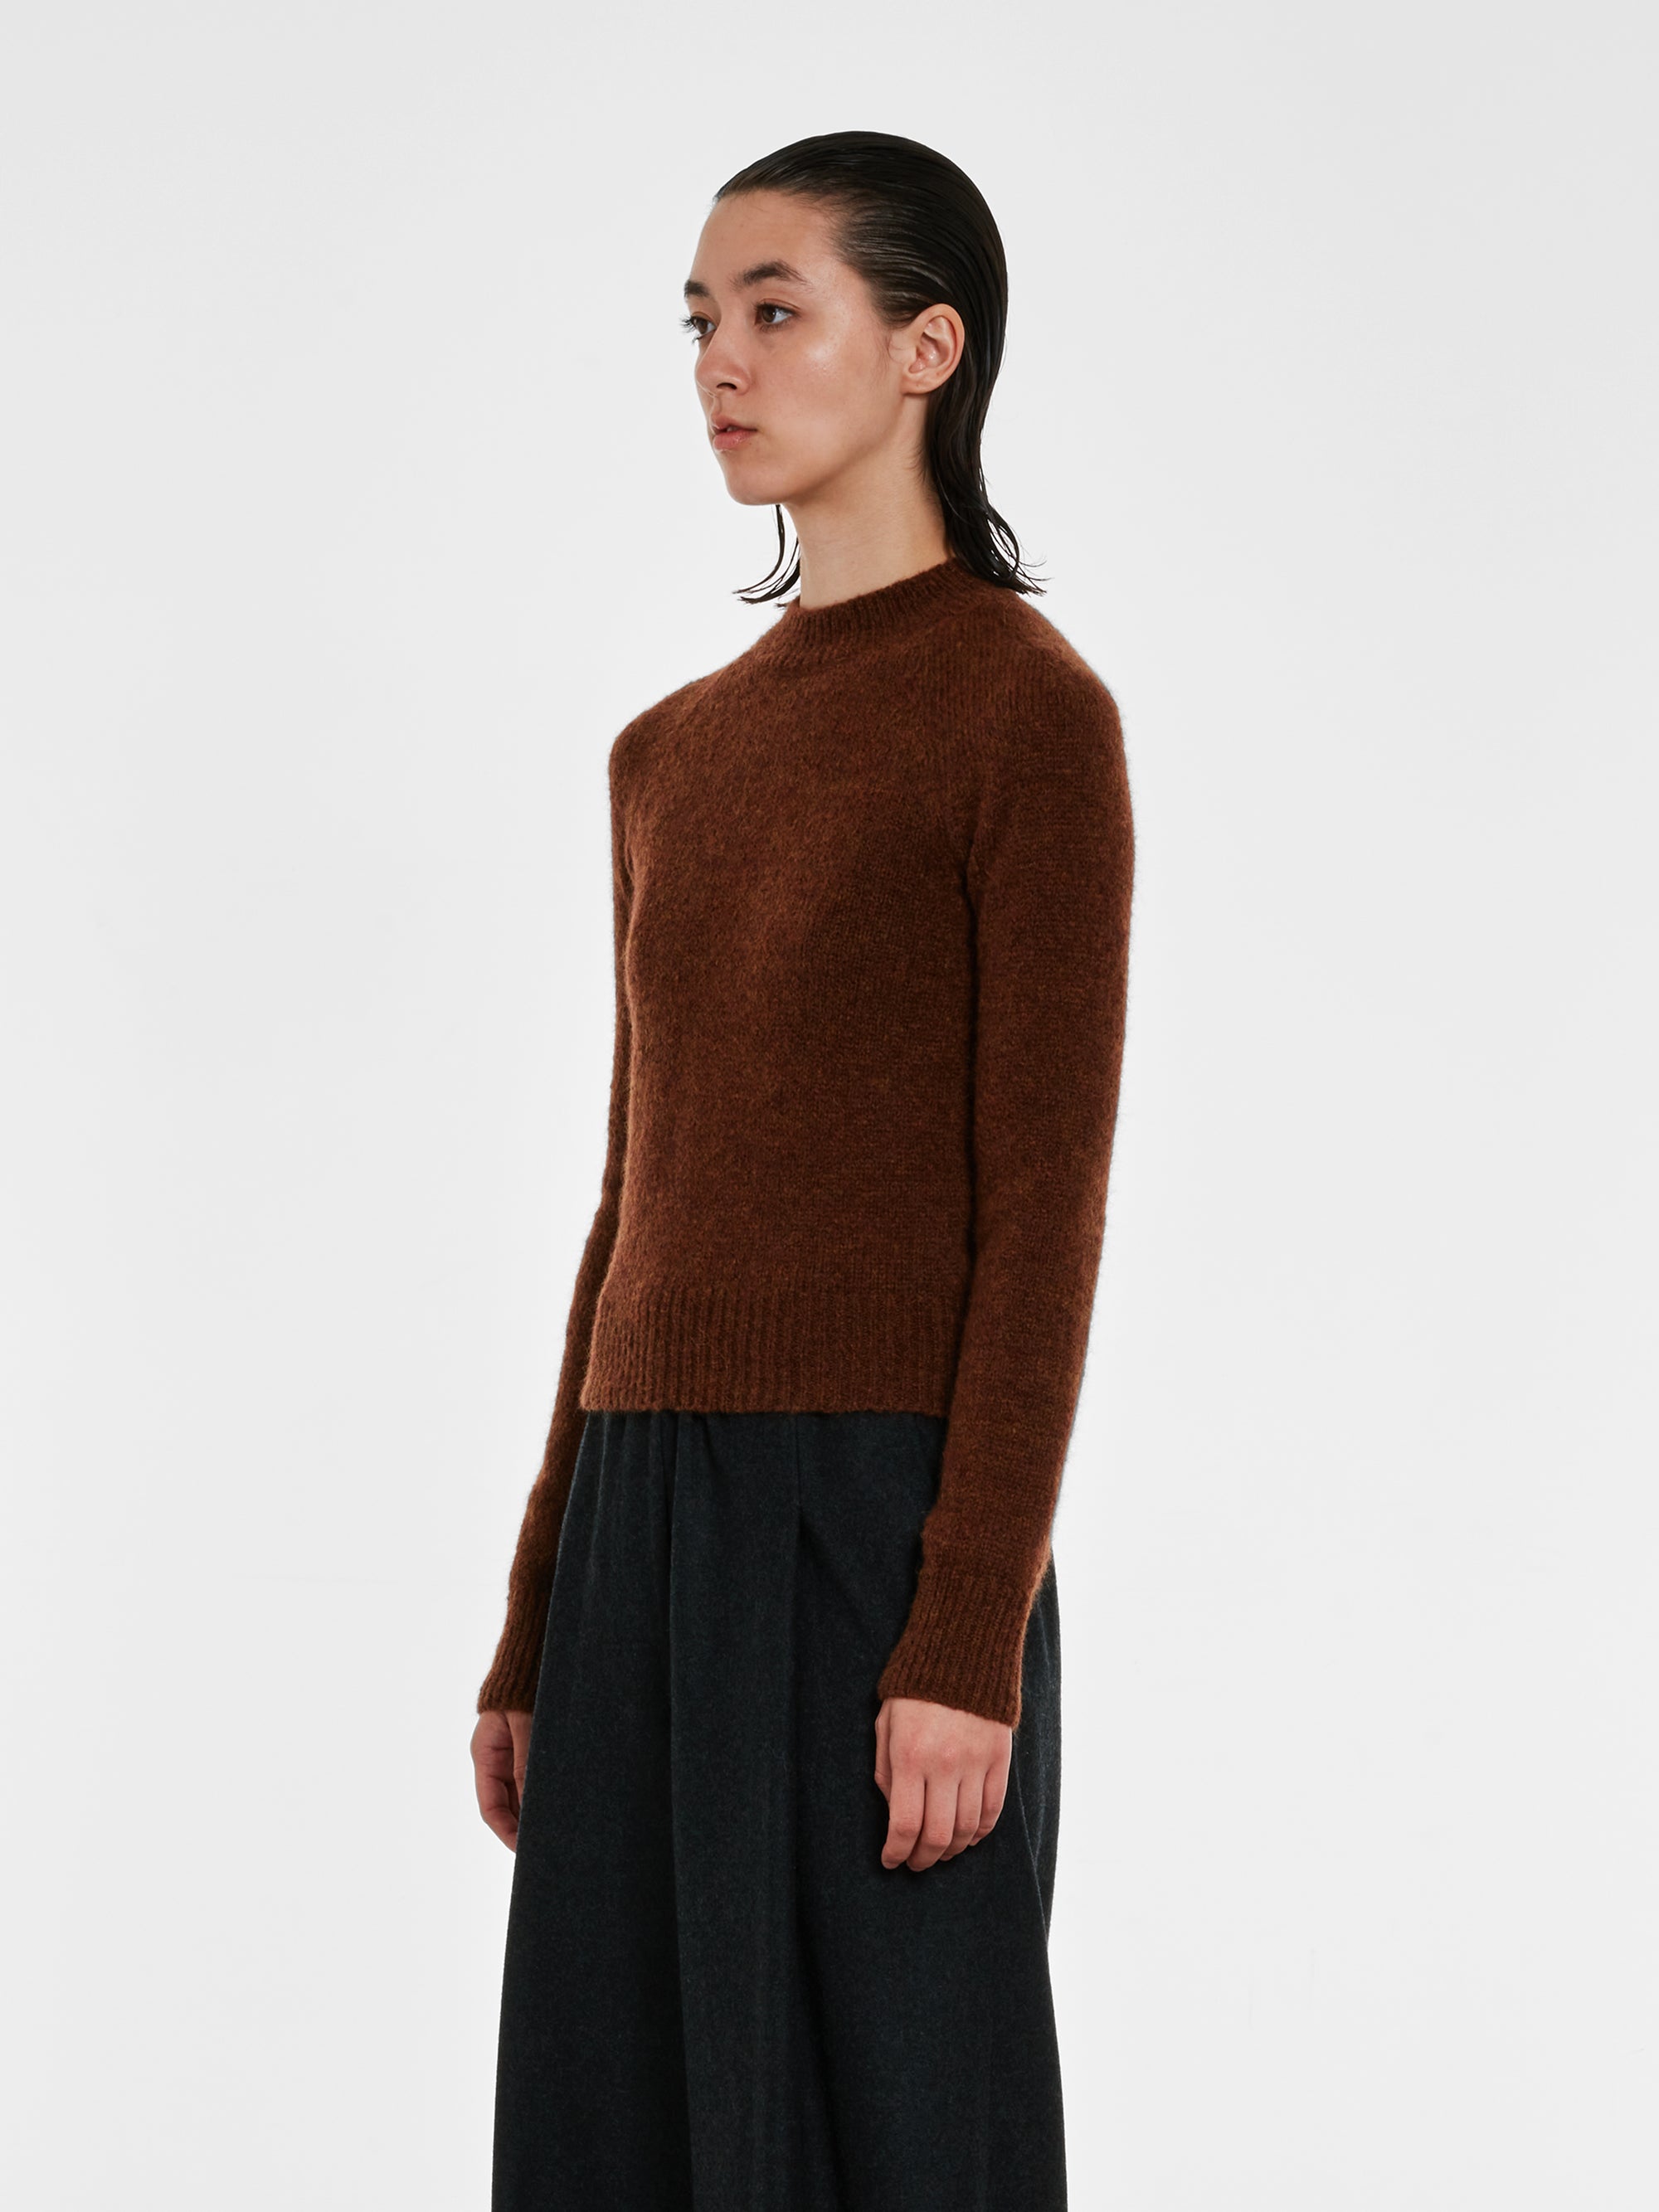 Dries Van Noten - Women’s Fitted Sweater - (Brown) view 3